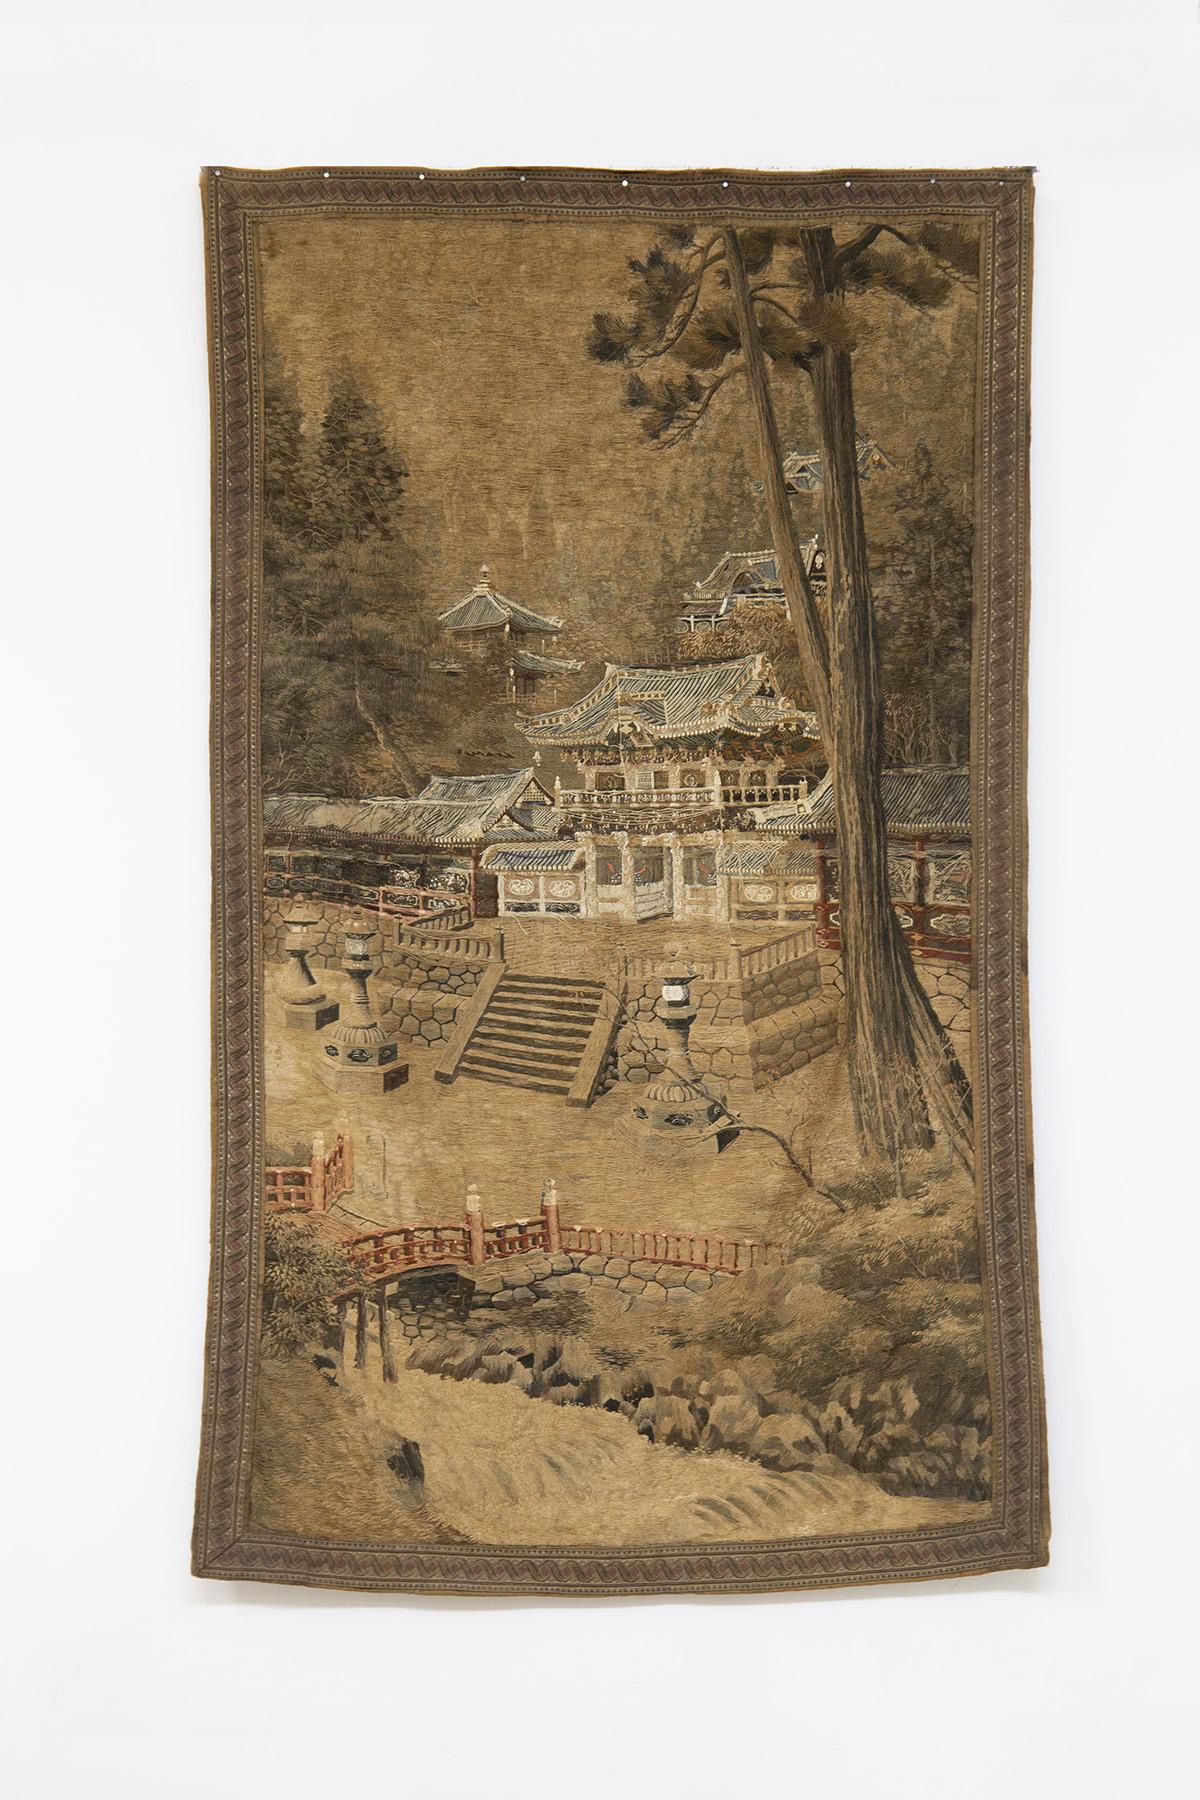 Wunderschöner und sehr seltener japanischer Wandteppich aus der Zeit um 1900, aus gewebter Seide und Baumwolle, von absoluter Feinheit.
Der Wandteppich wird in Länge und Breite entwickelt. Es hat eine rechteckige Form, mit einem Rahmen mit